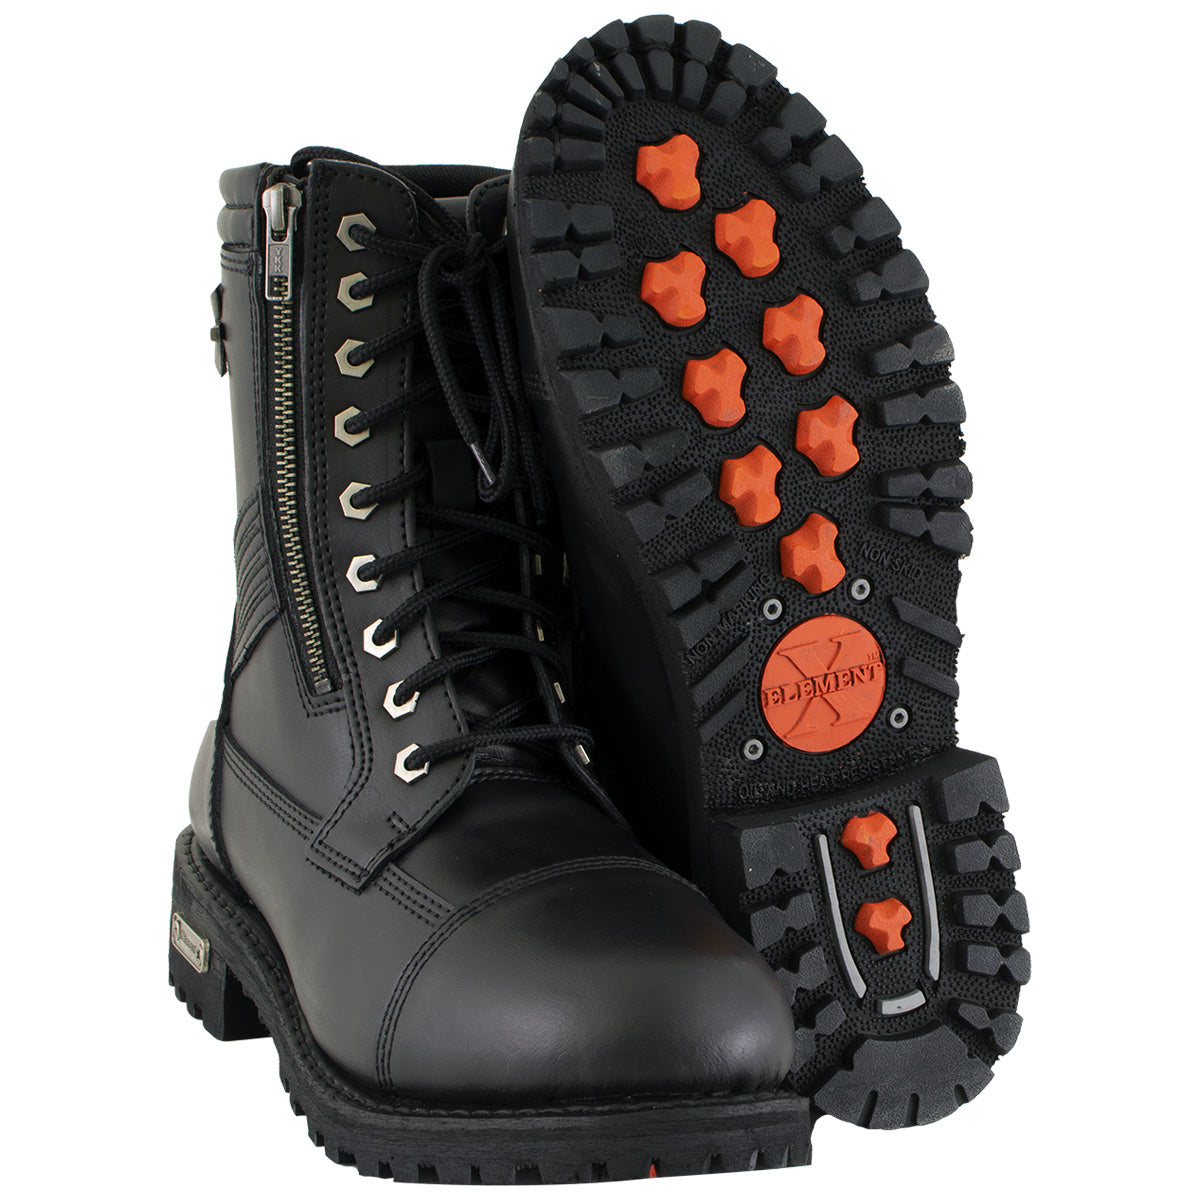 xelement boots